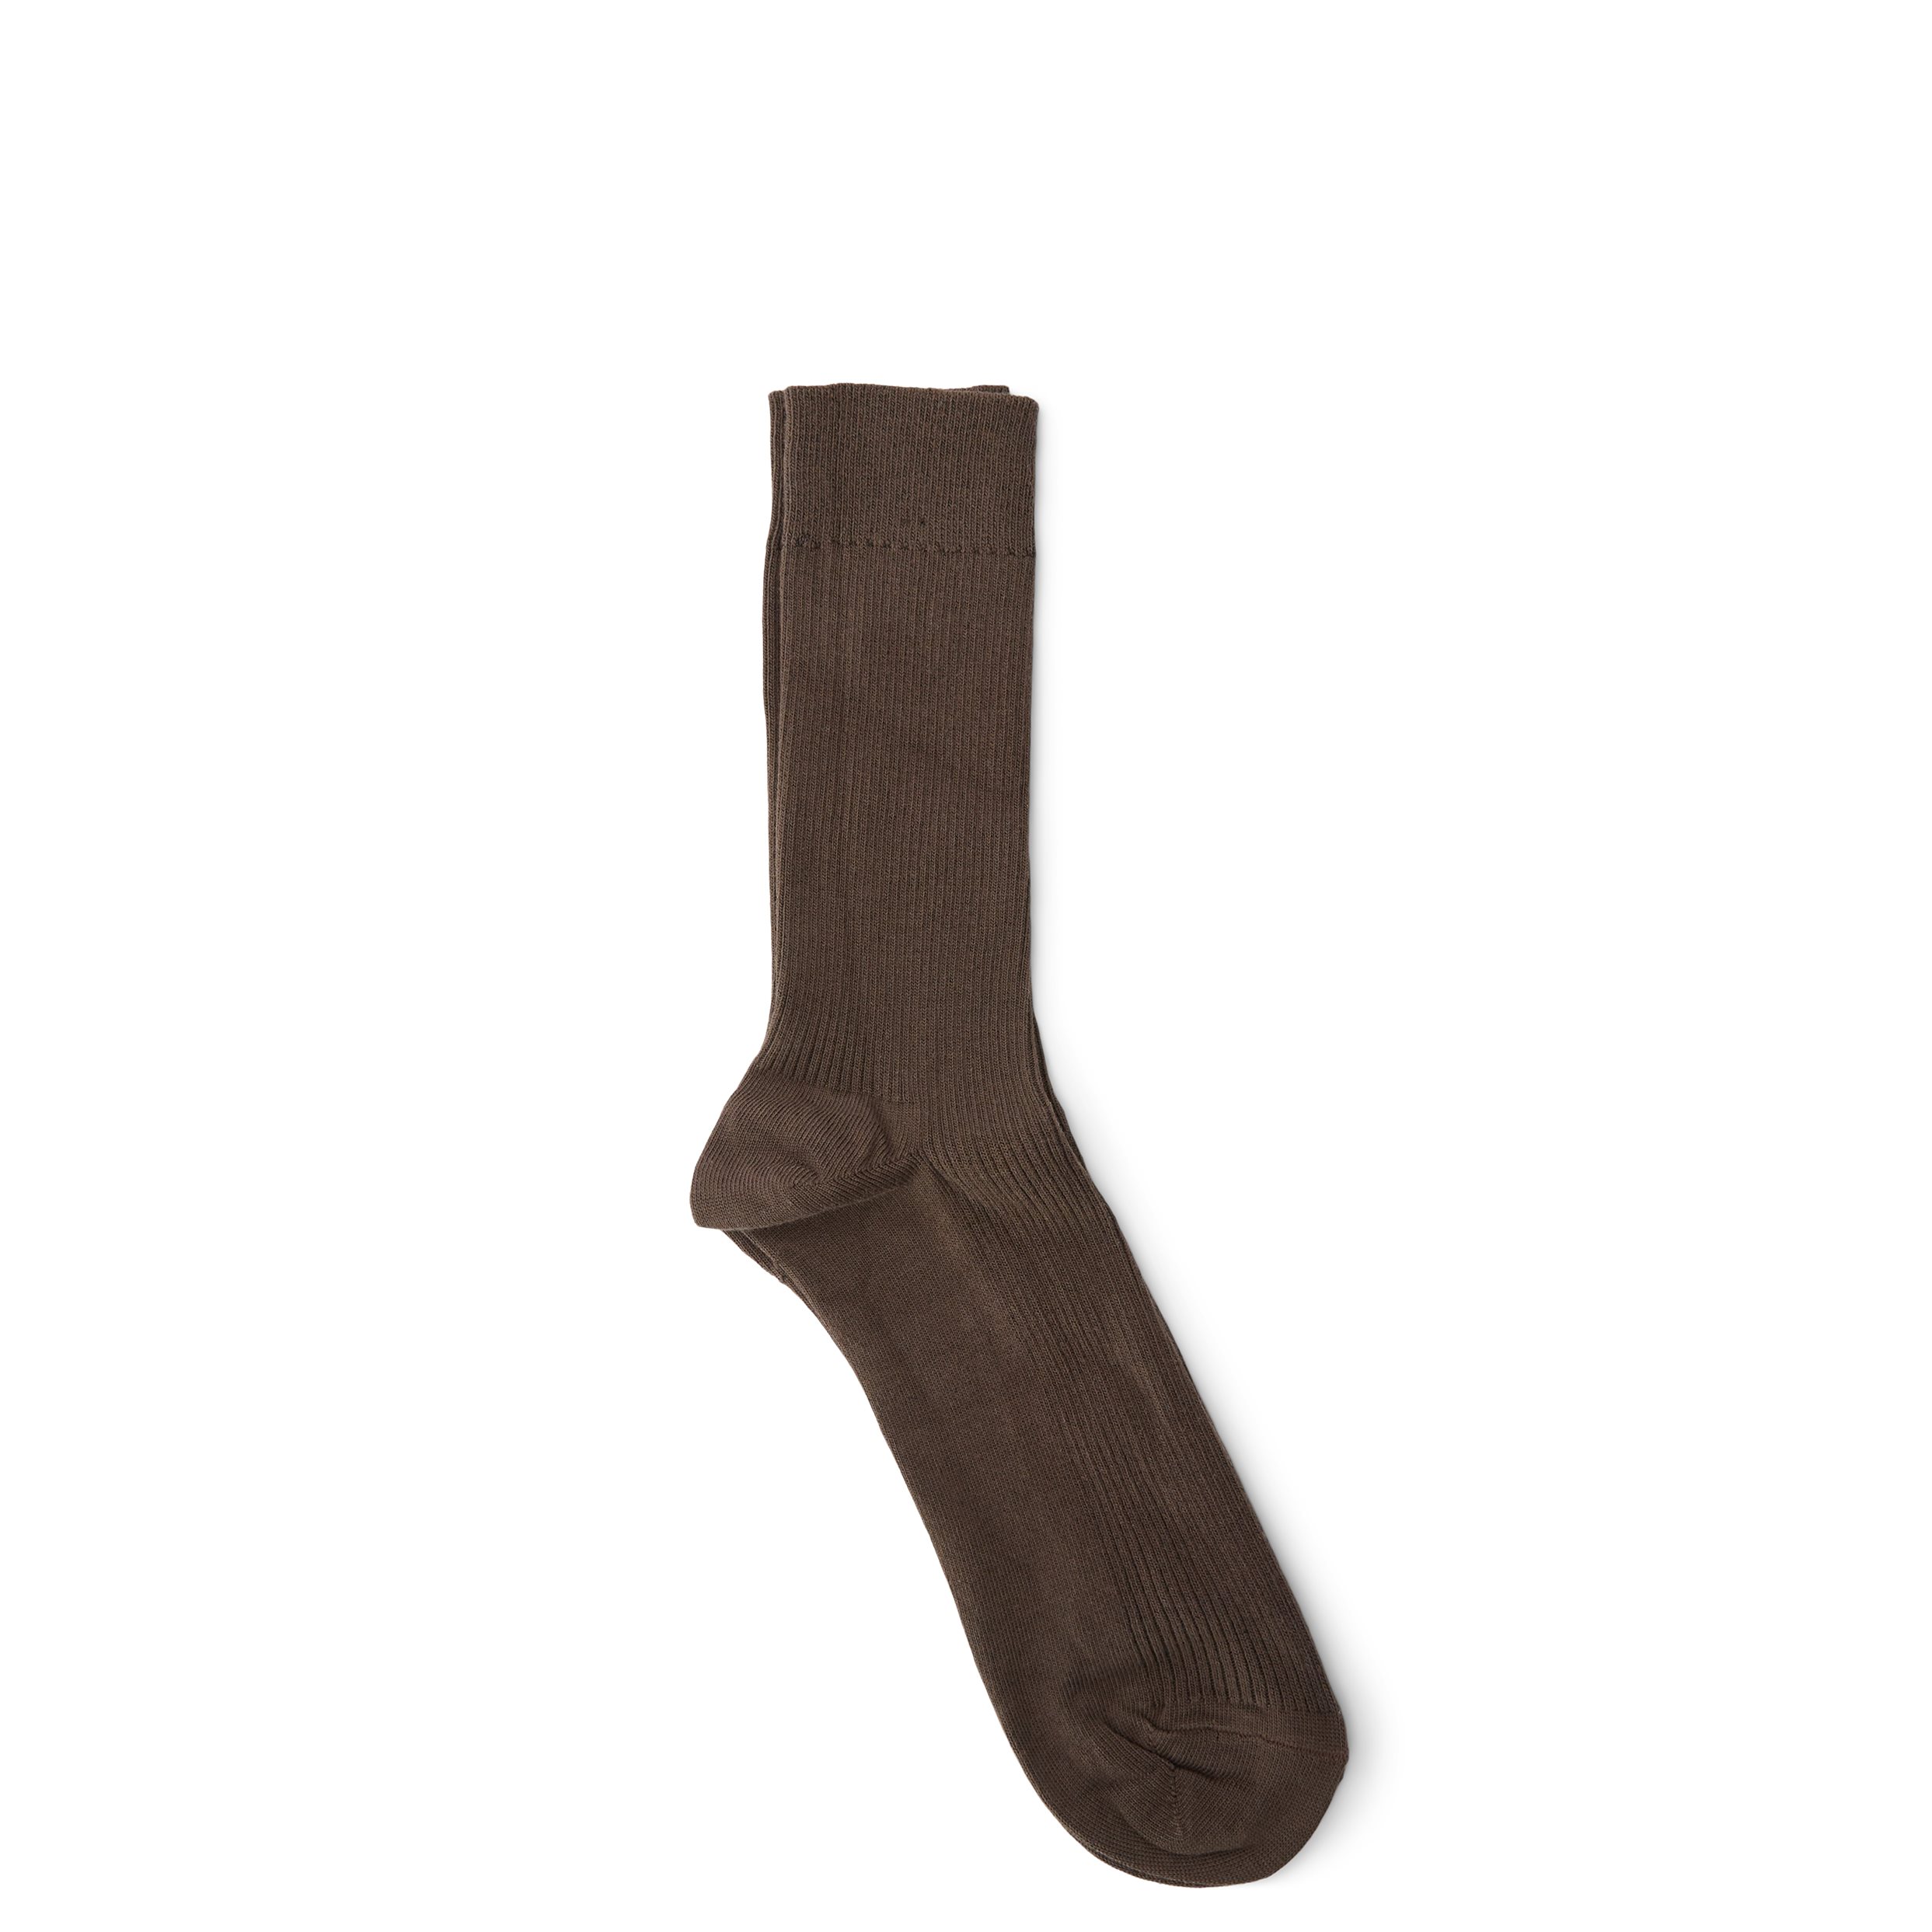 qUINT Socks RIB 115-12810 Brown